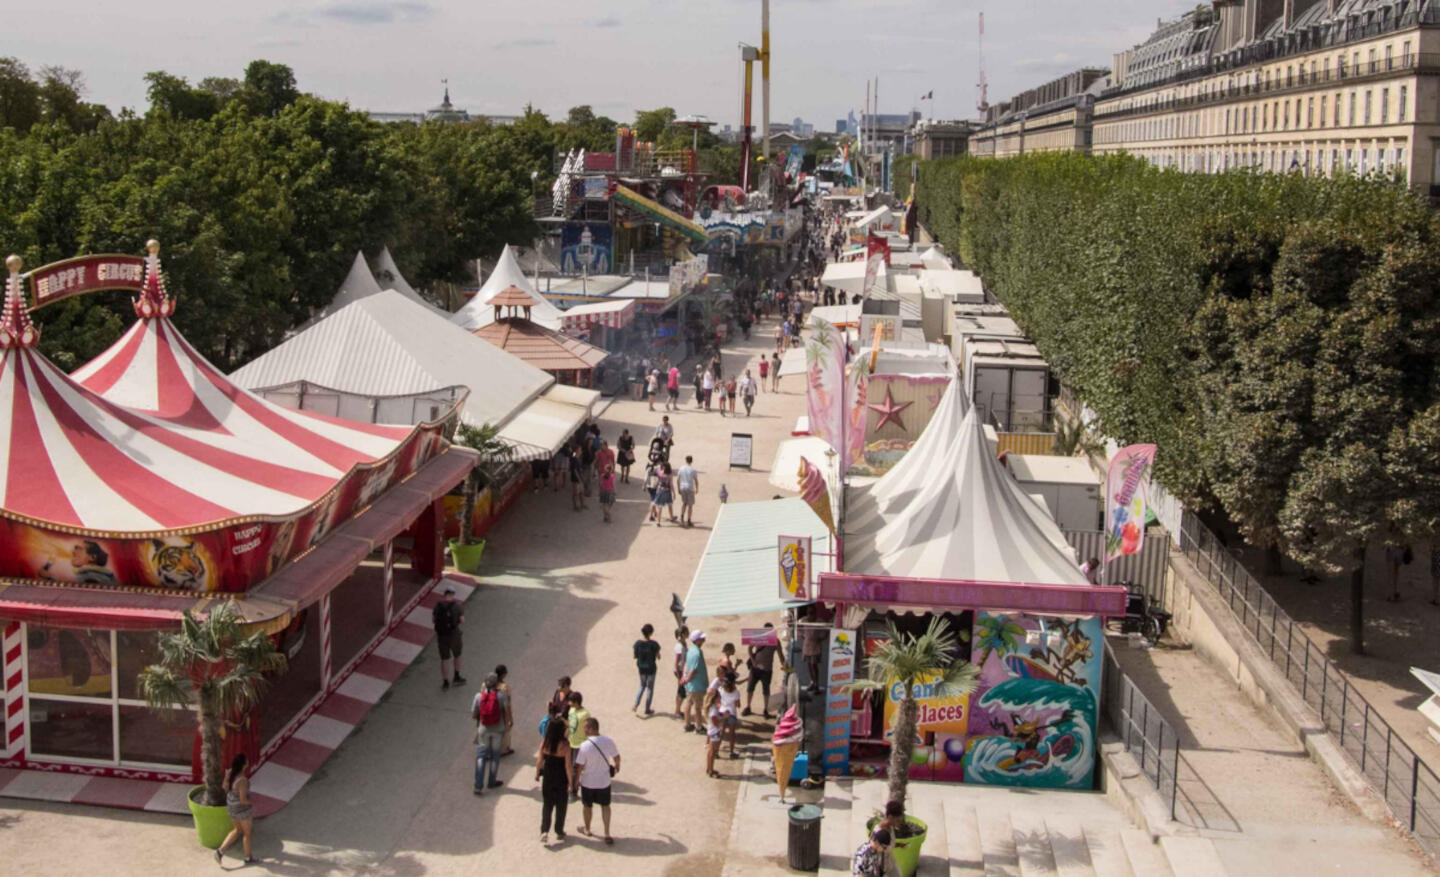 La avenida central del Festival de las Tullerías, con sus coloridos puestos y los visitantes disfrutando de las atracciones bajo un cielo azul despejado.